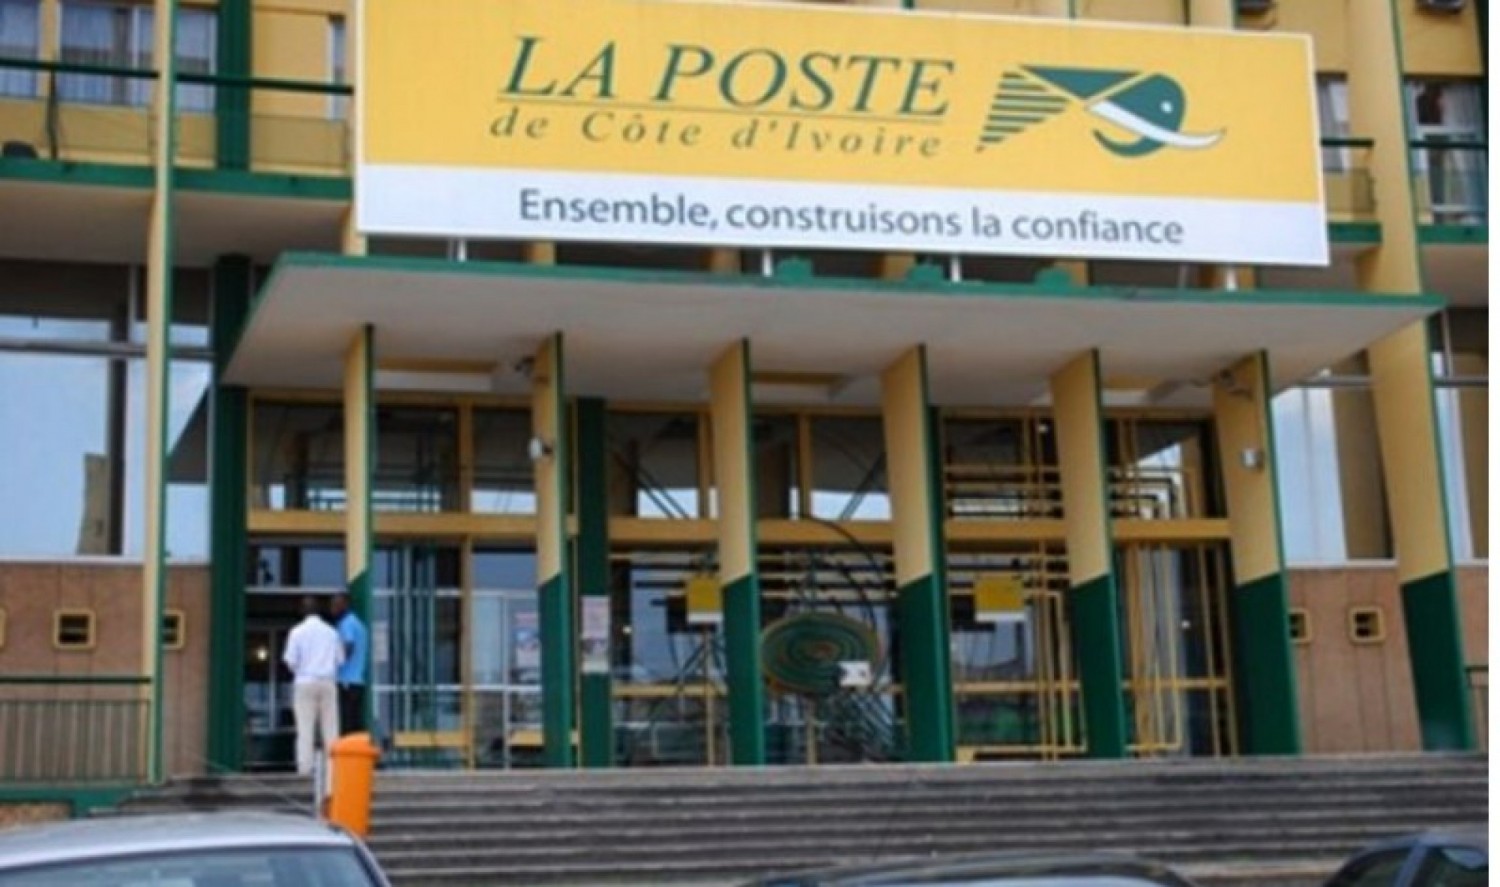 Côte d'Ivoire : En Suisse, la Poste obtient des appuis pour des investissements importants